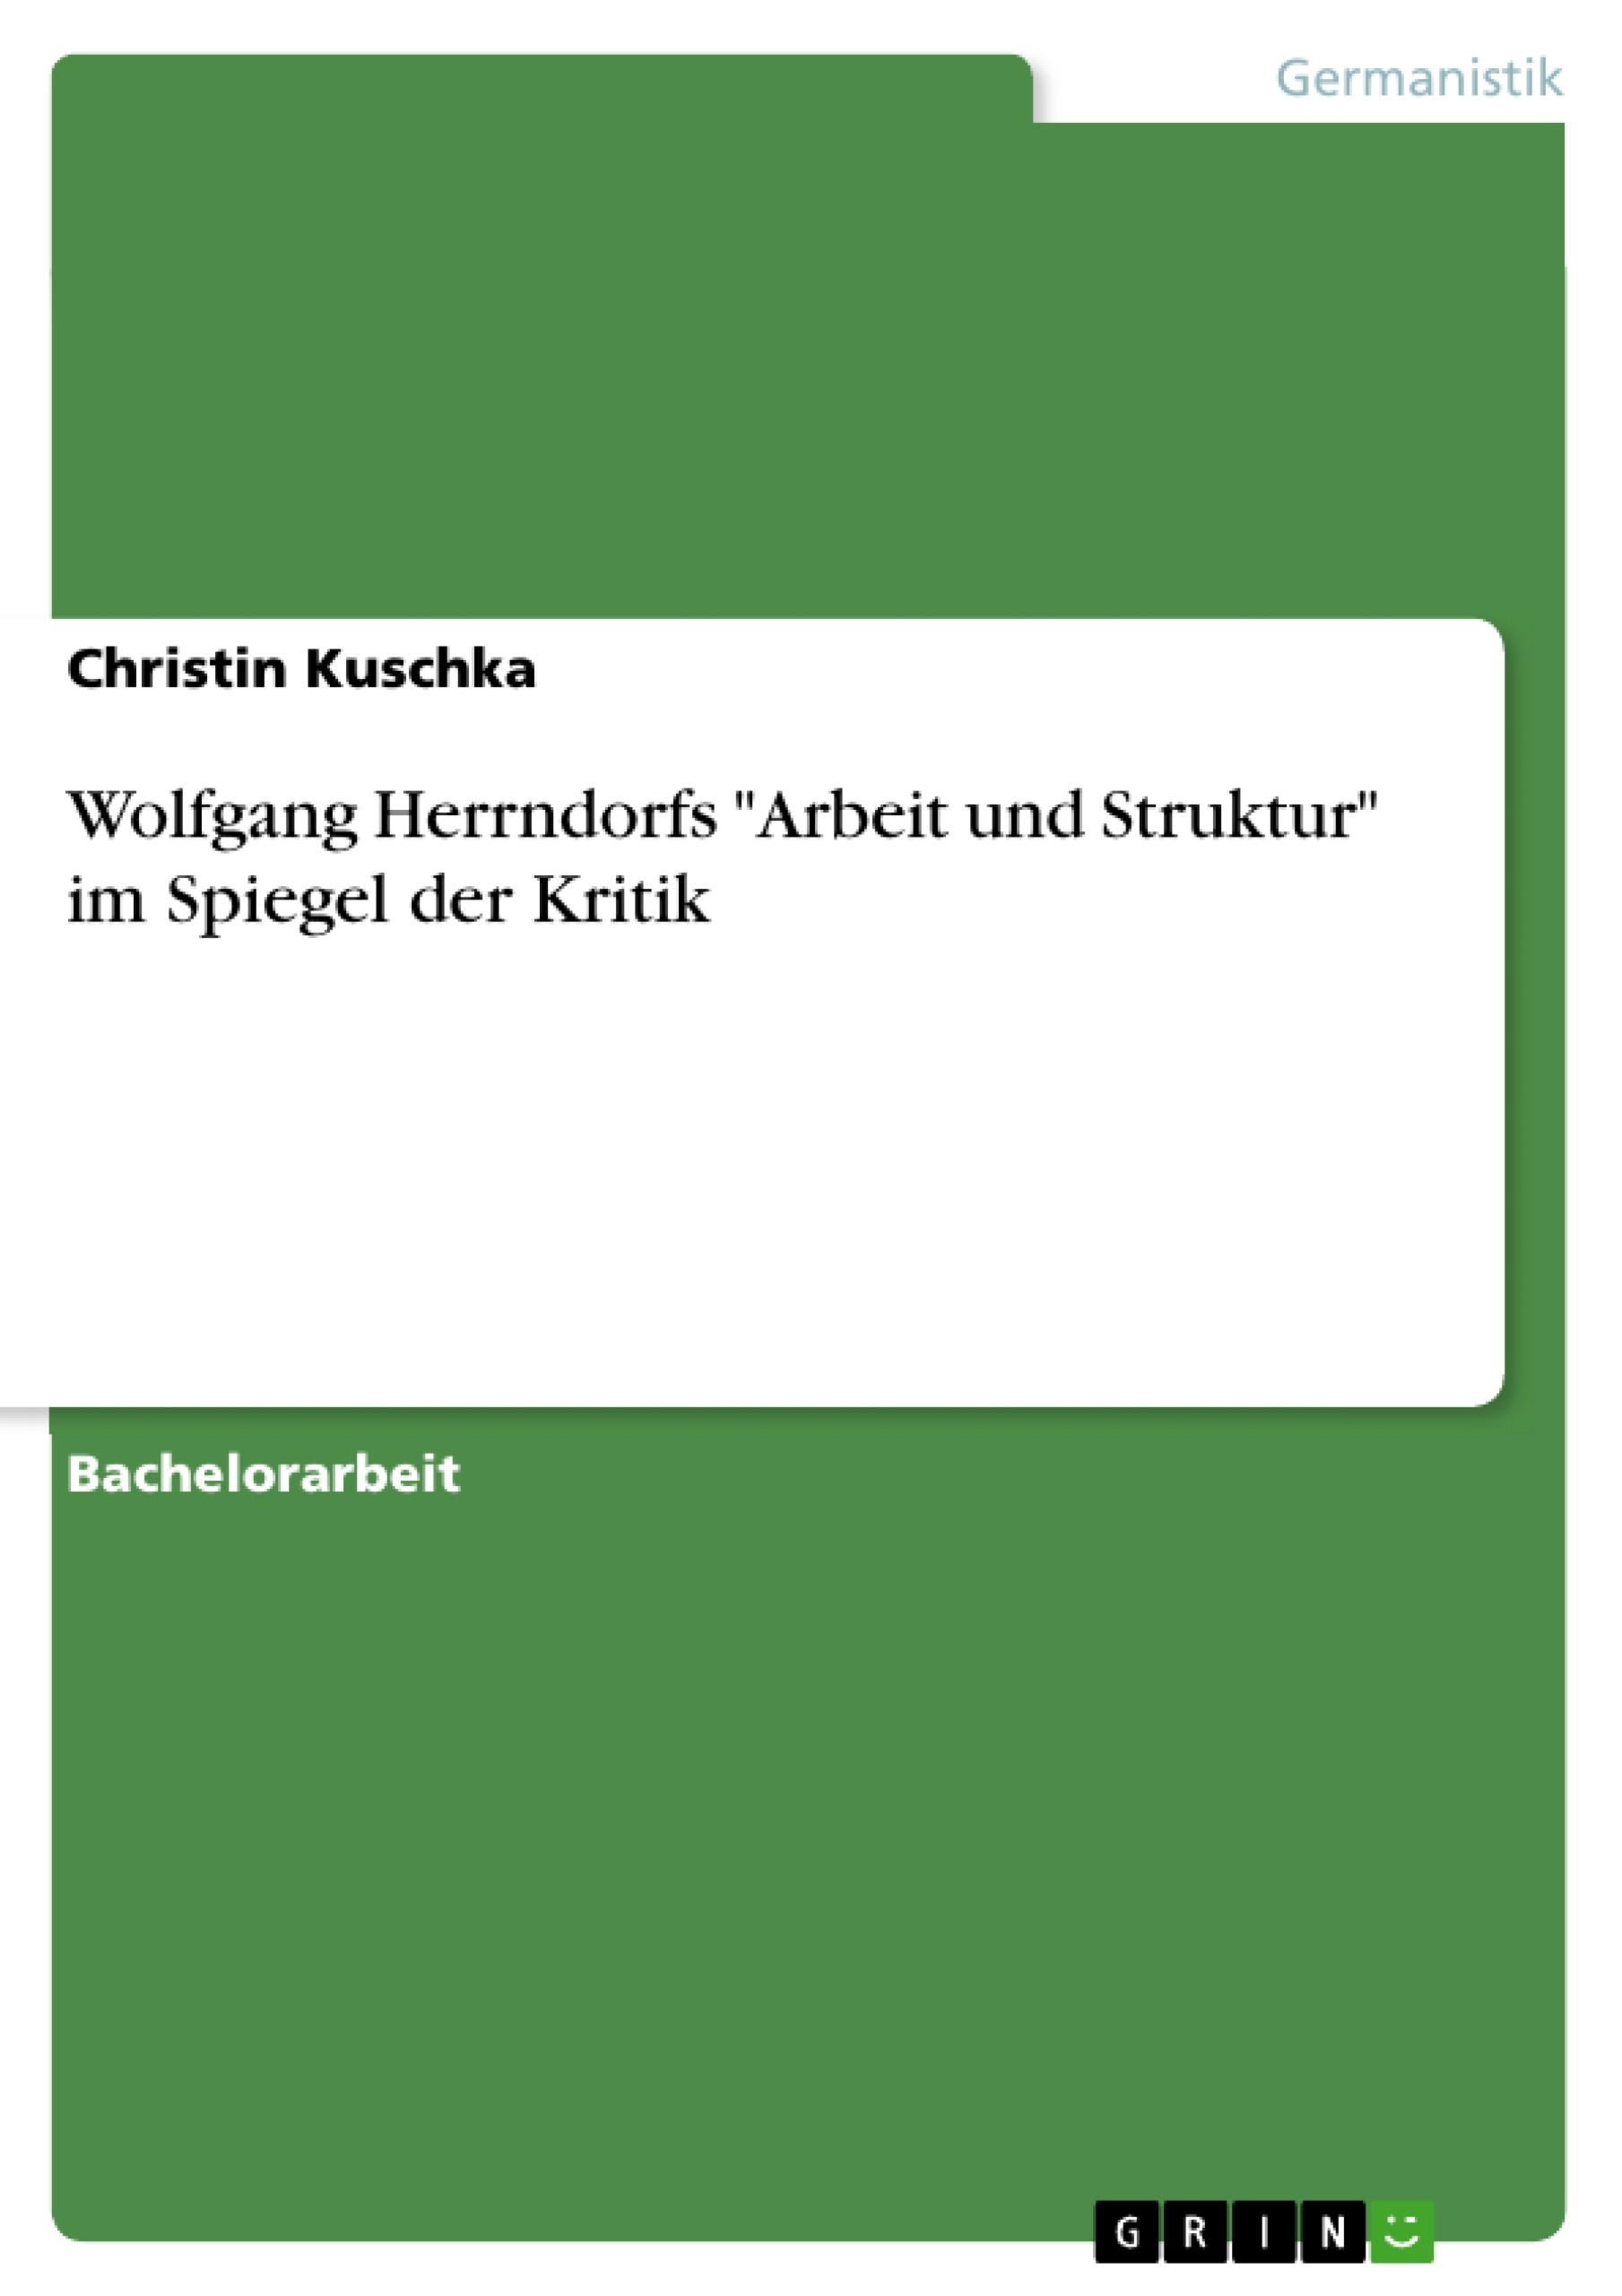 Titre: Wolfgang Herrndorfs "Arbeit und Struktur" im Spiegel der Kritik